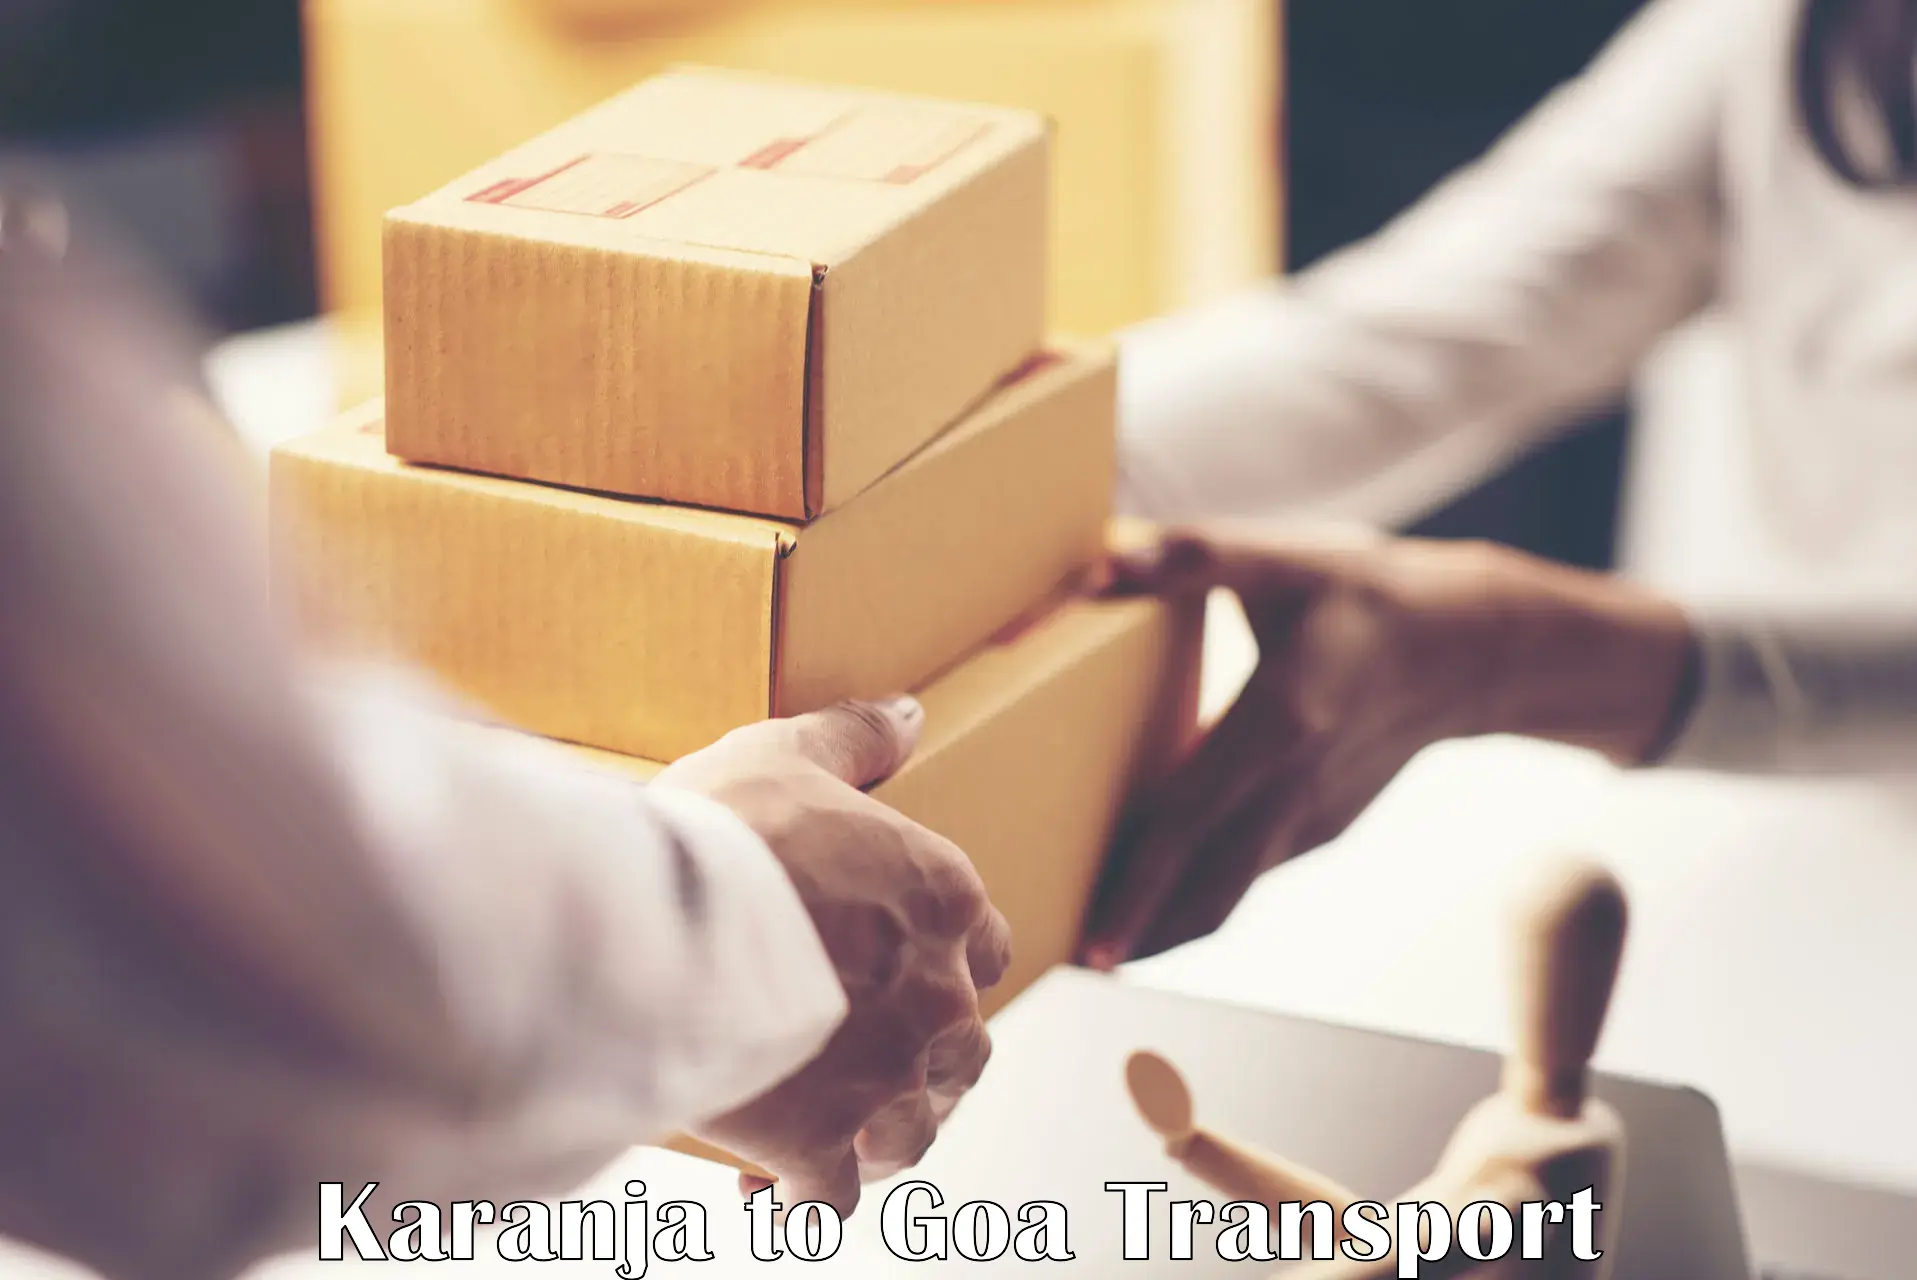 Furniture transport service in Karanja to Goa